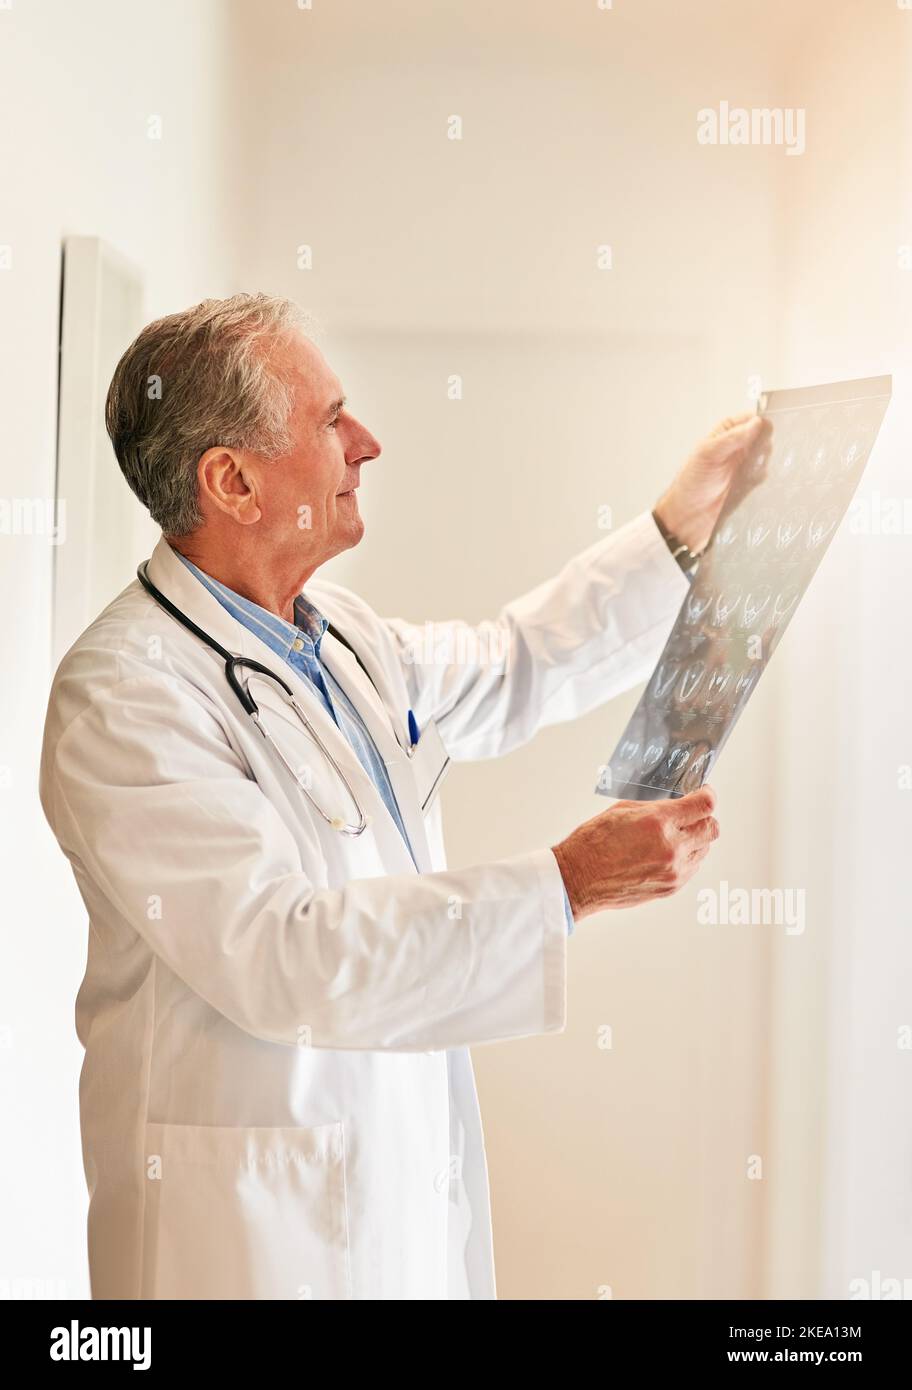 Ora può vedere tutto chiaramente: Un medico maturo che tiene in mano una radiografia per esaminarla. Foto Stock